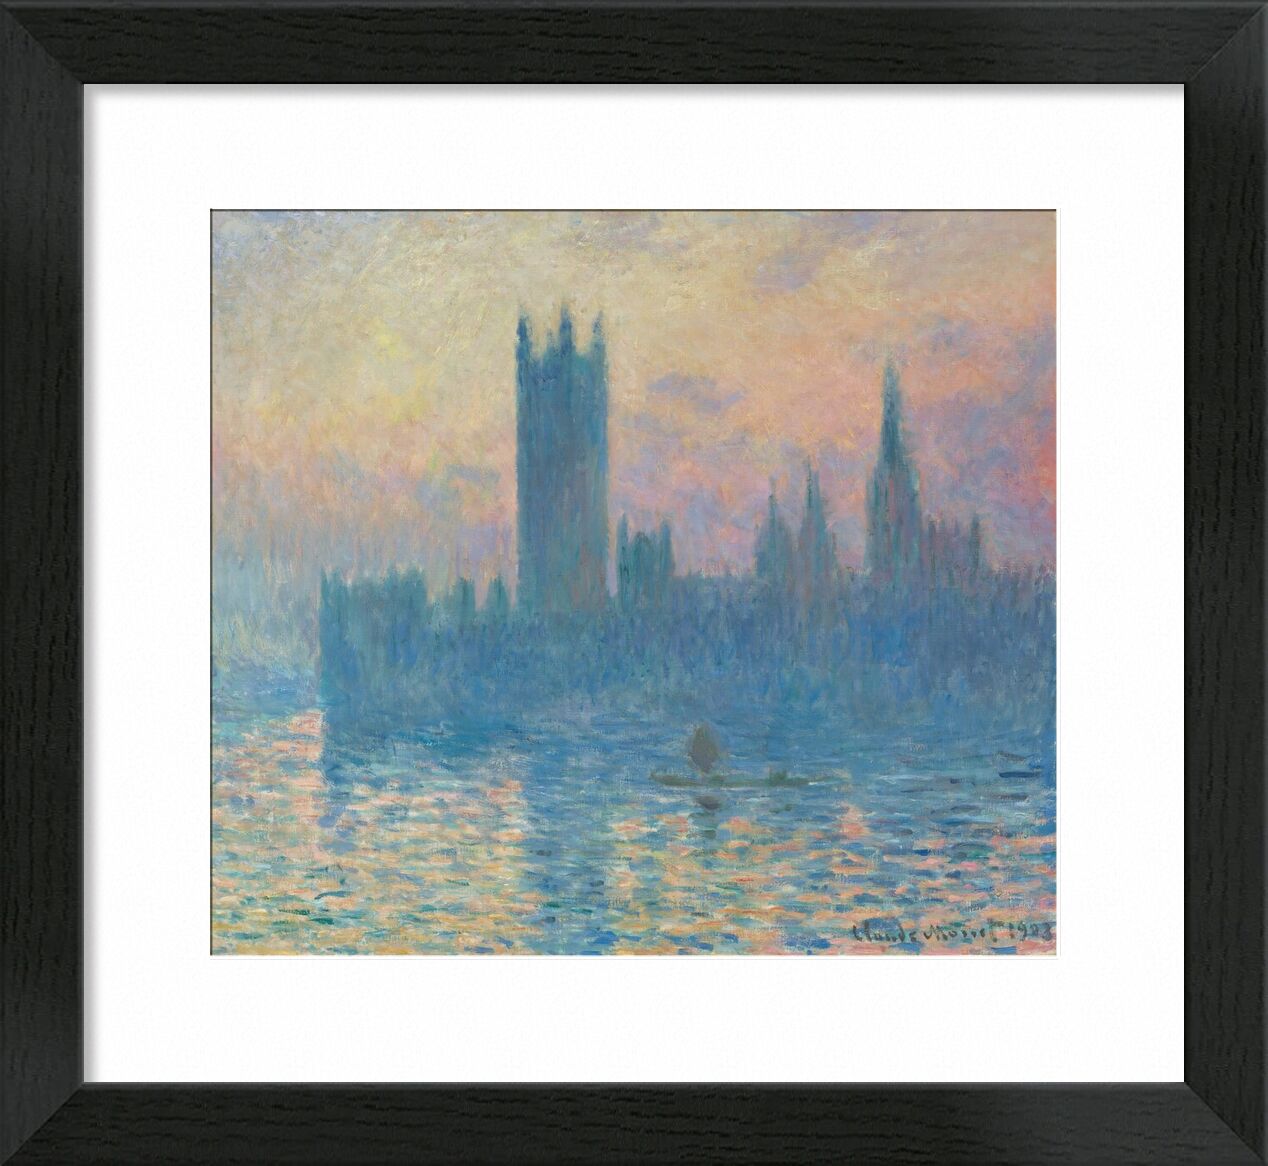 Houses of Parliament, London - CLAUDE MONET 1905 von Bildende Kunst, Prodi Art, Fluss, London, thames, Kapital, Parlament, Parlament von London, CLAUDE MONE